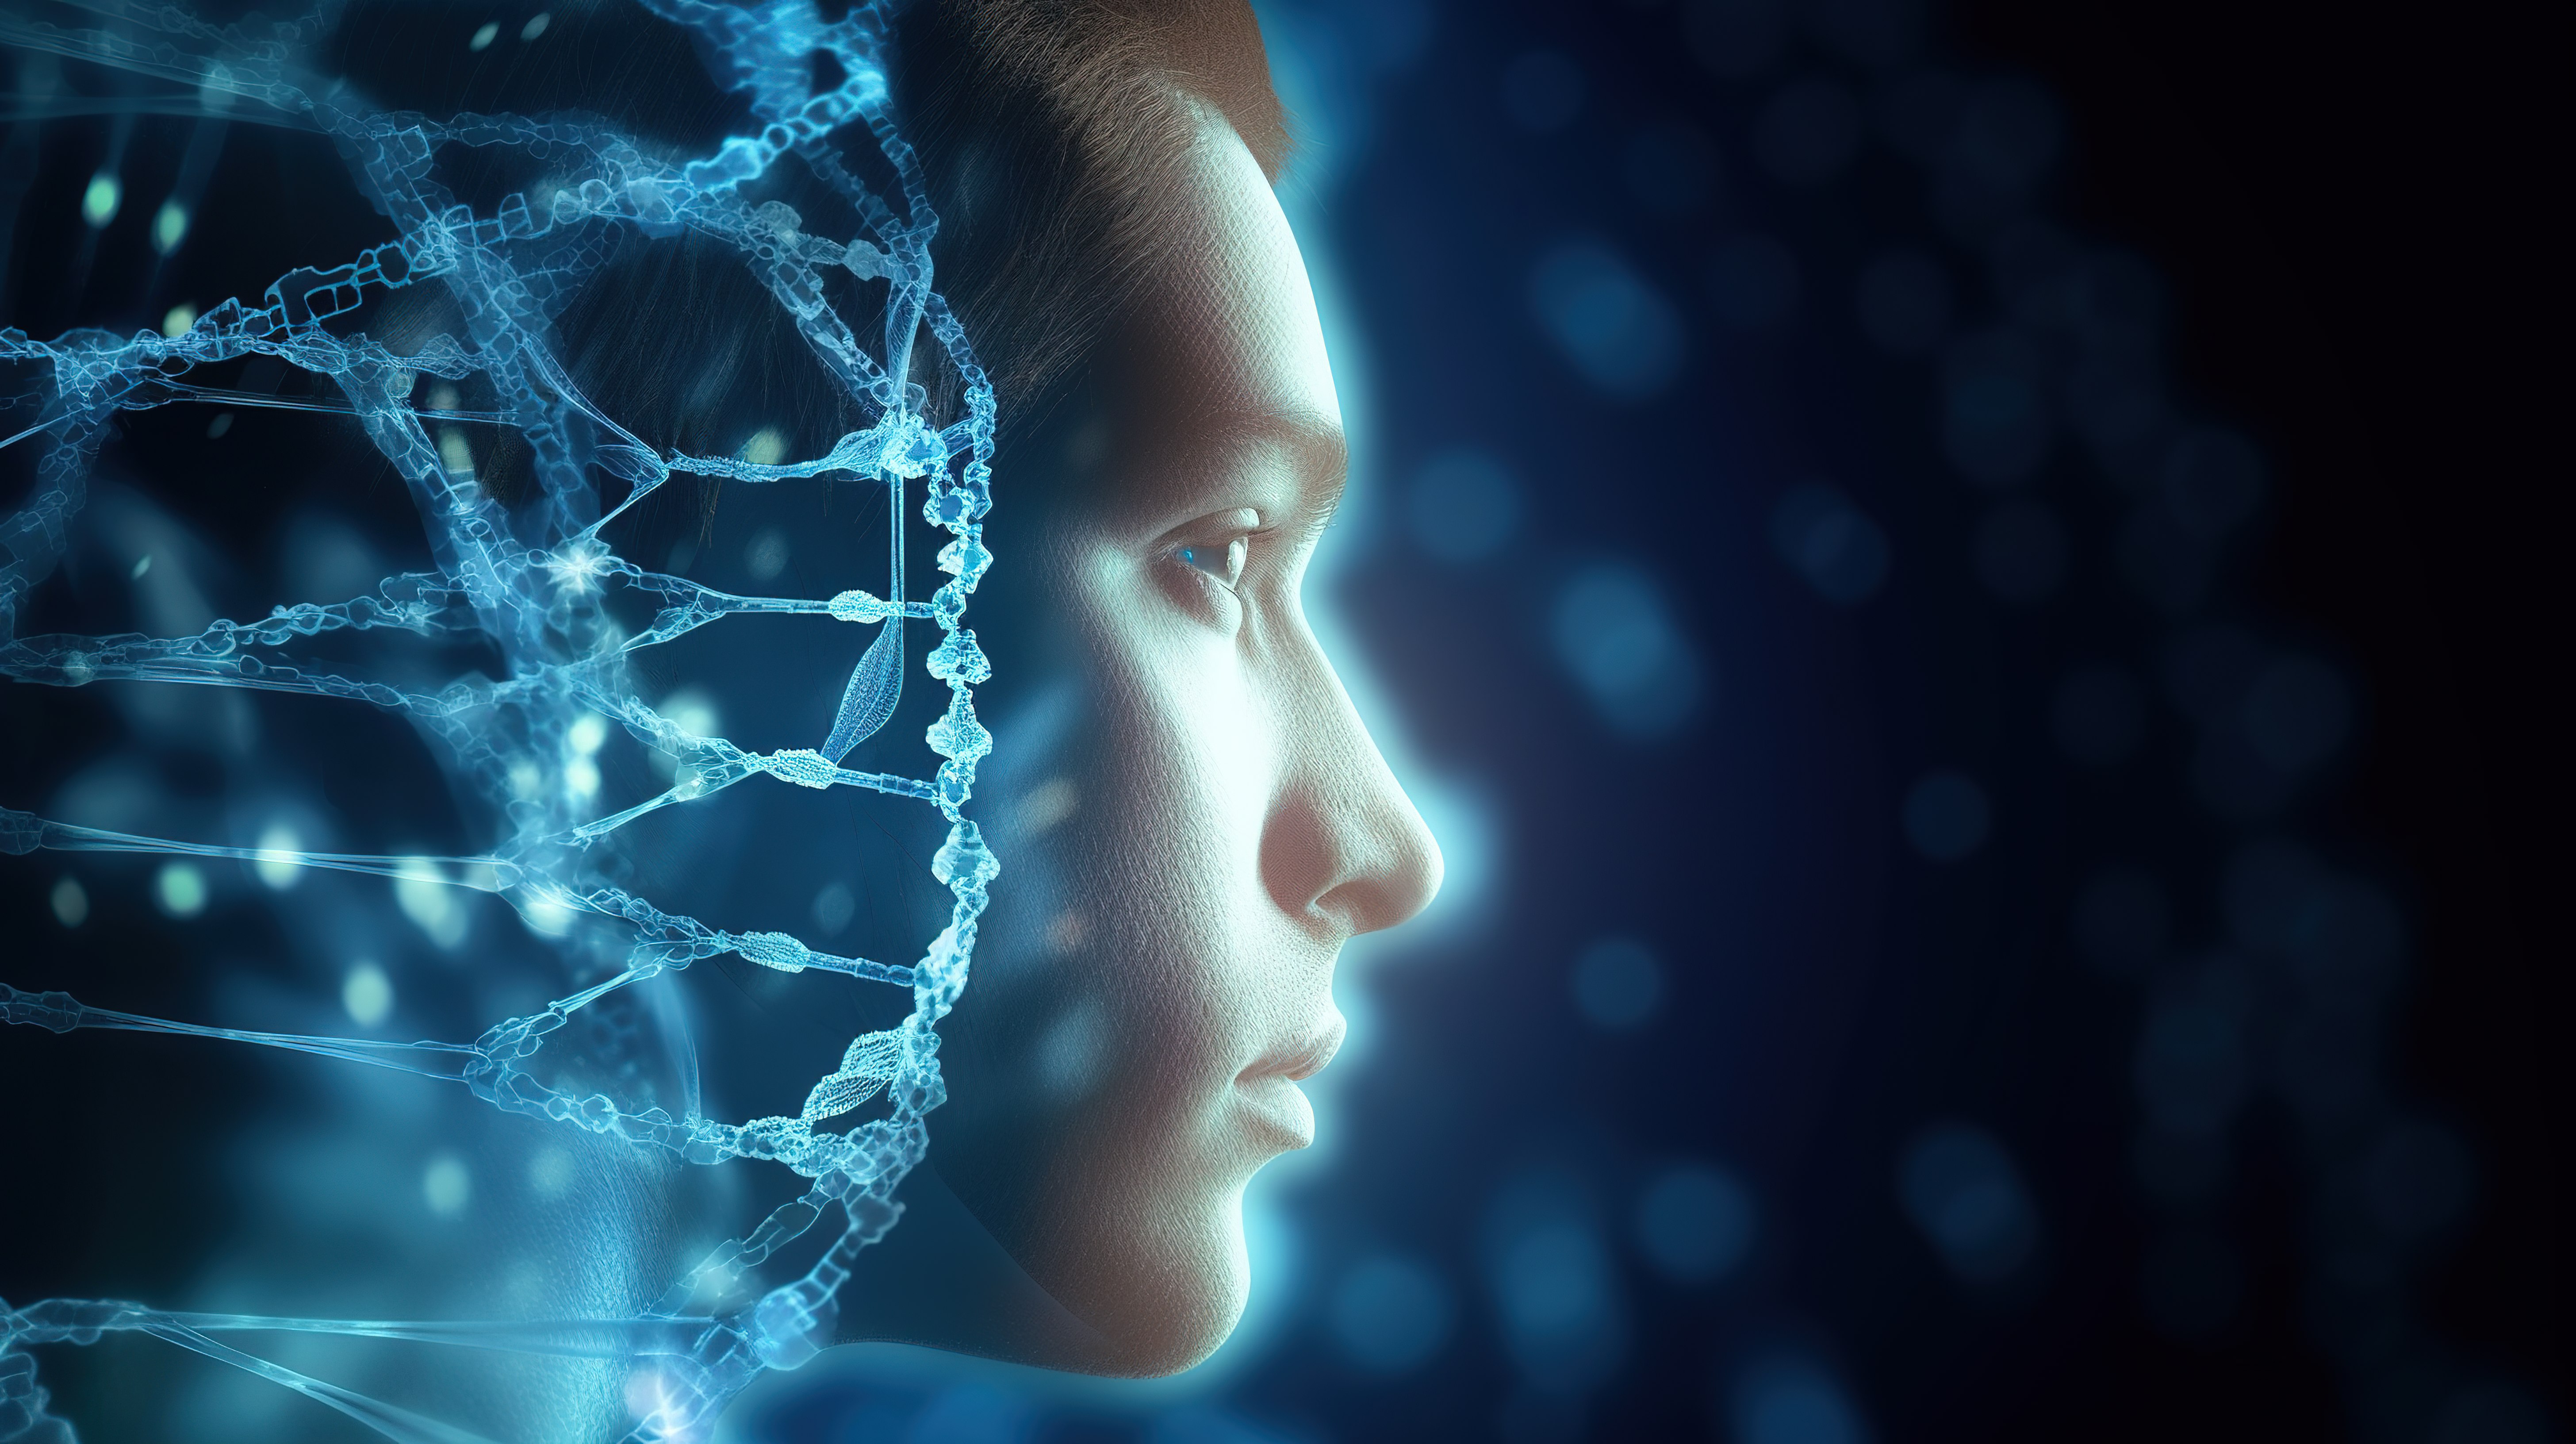 3D 渲染医学背景中的男性人物 DNA 链和大脑图片